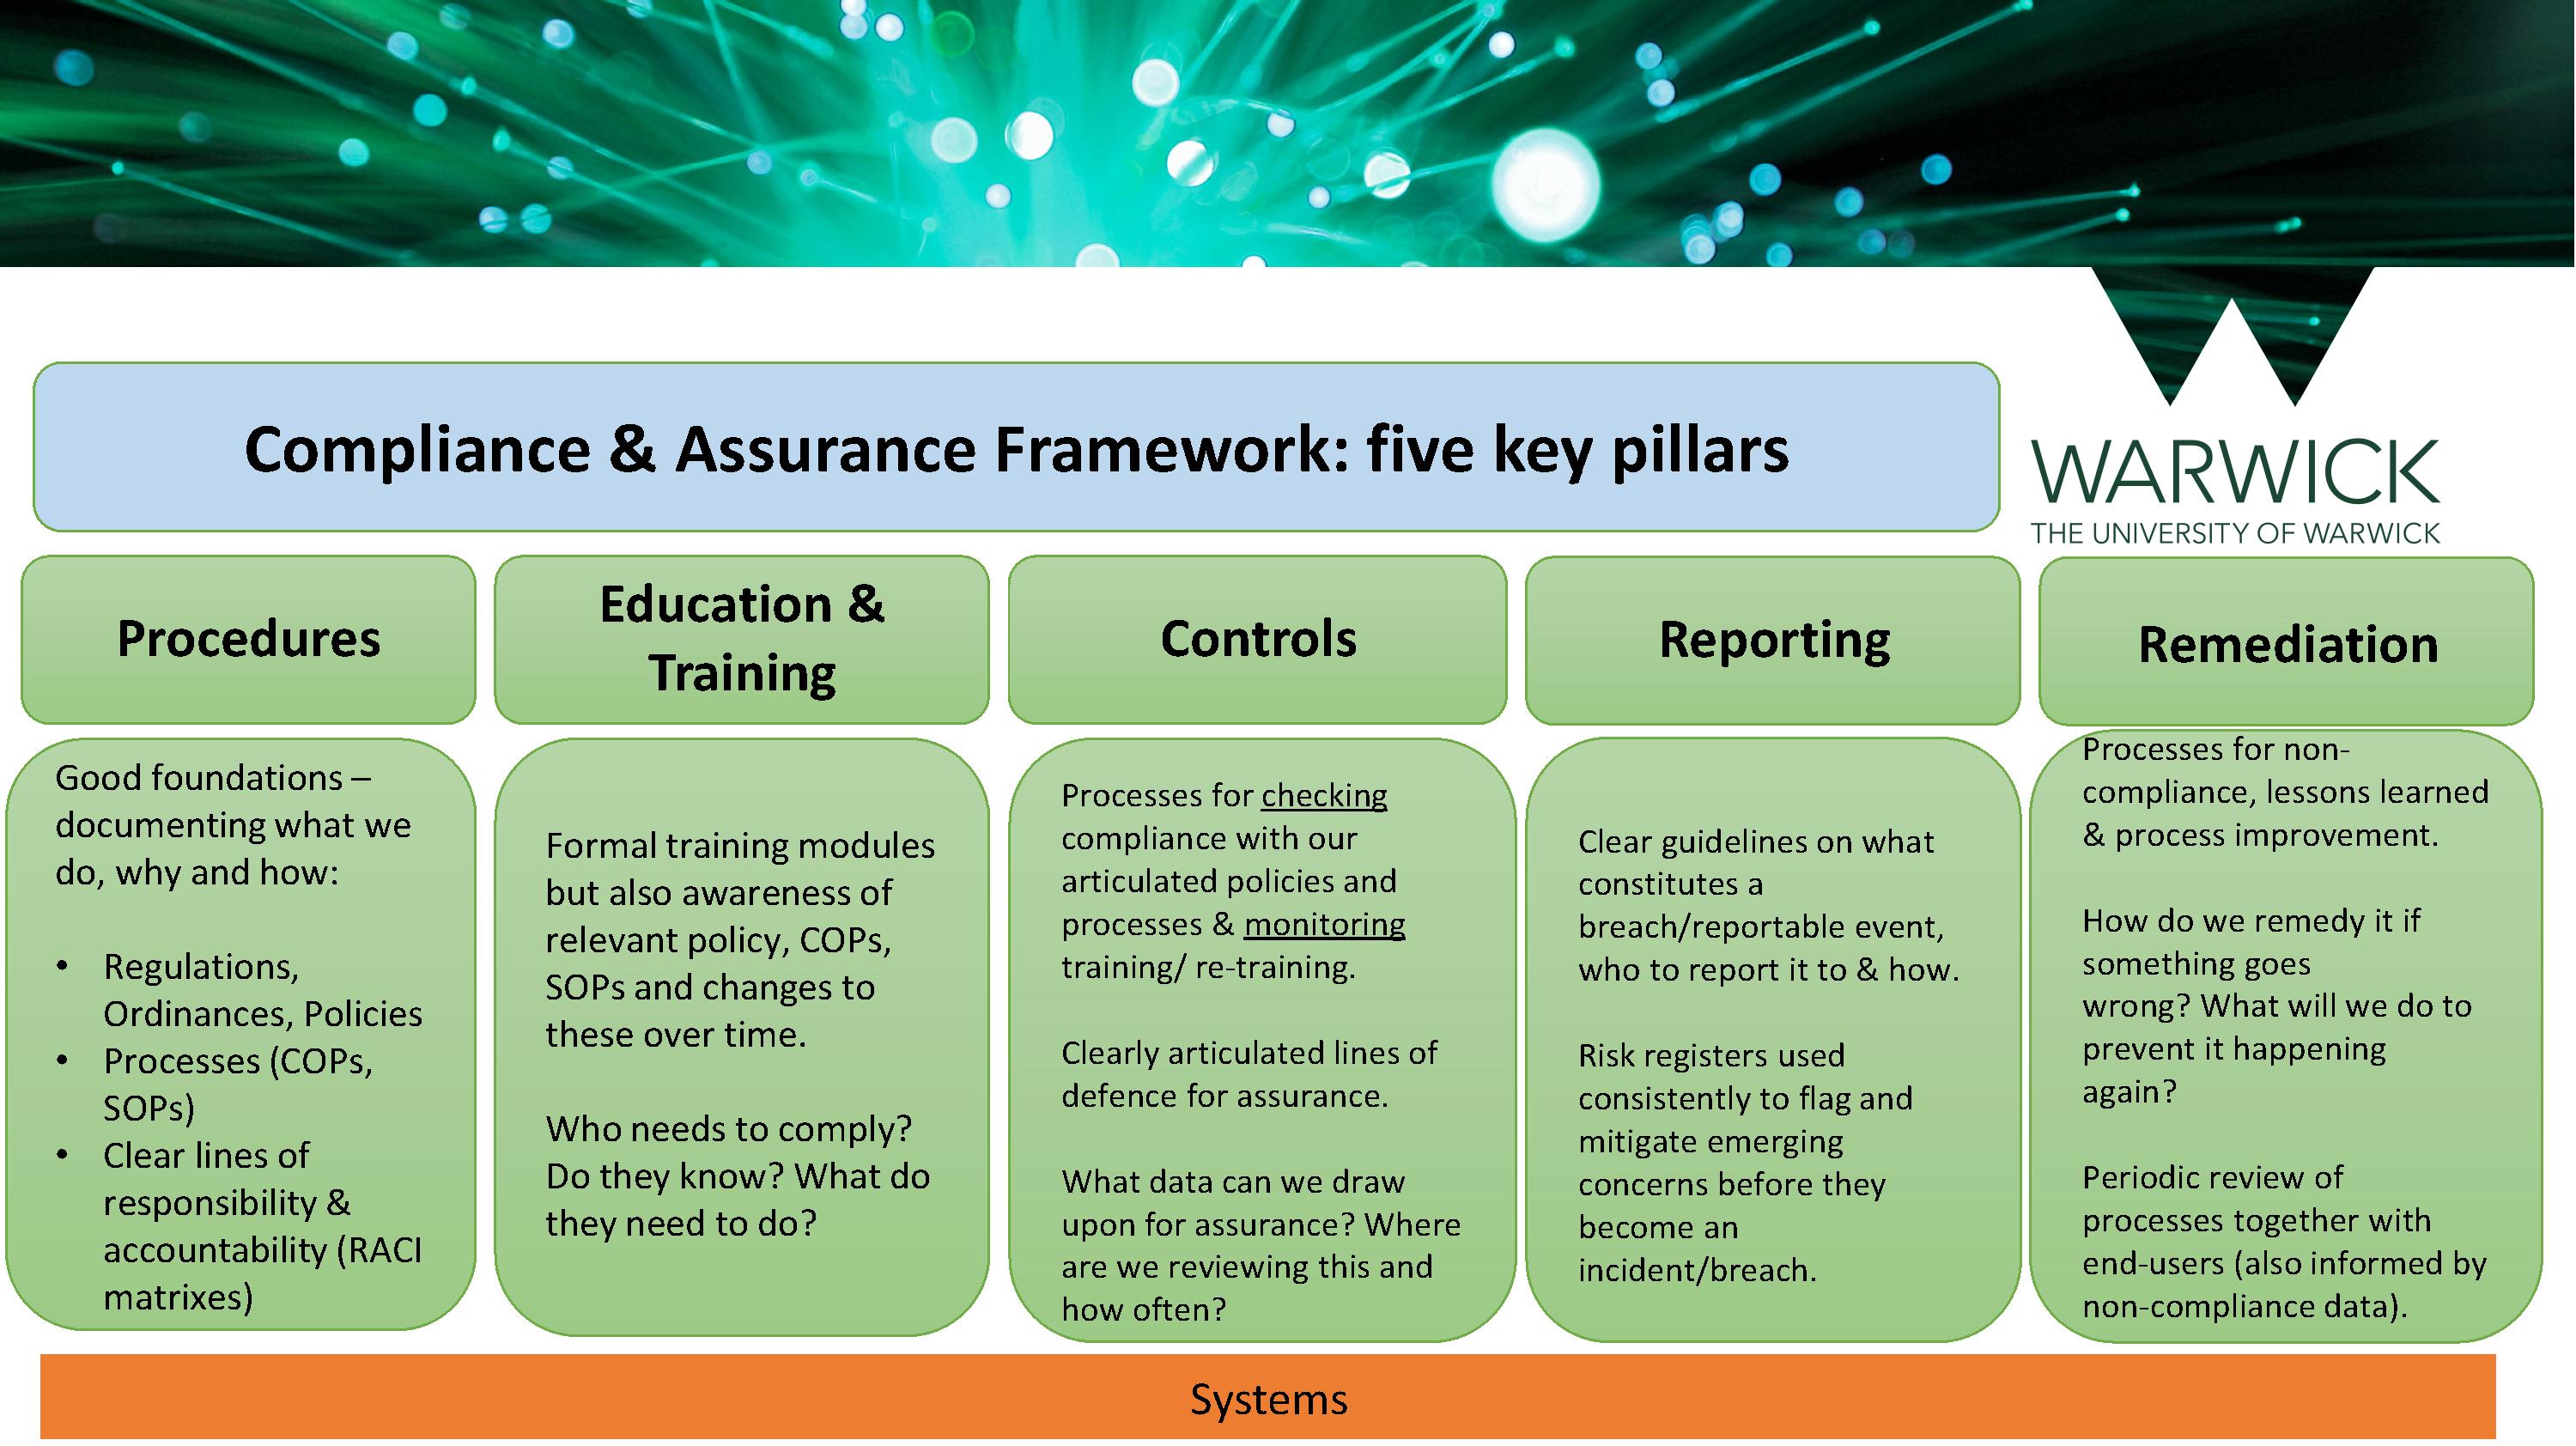 Compliance & Assurance Framework - 5 key pillars